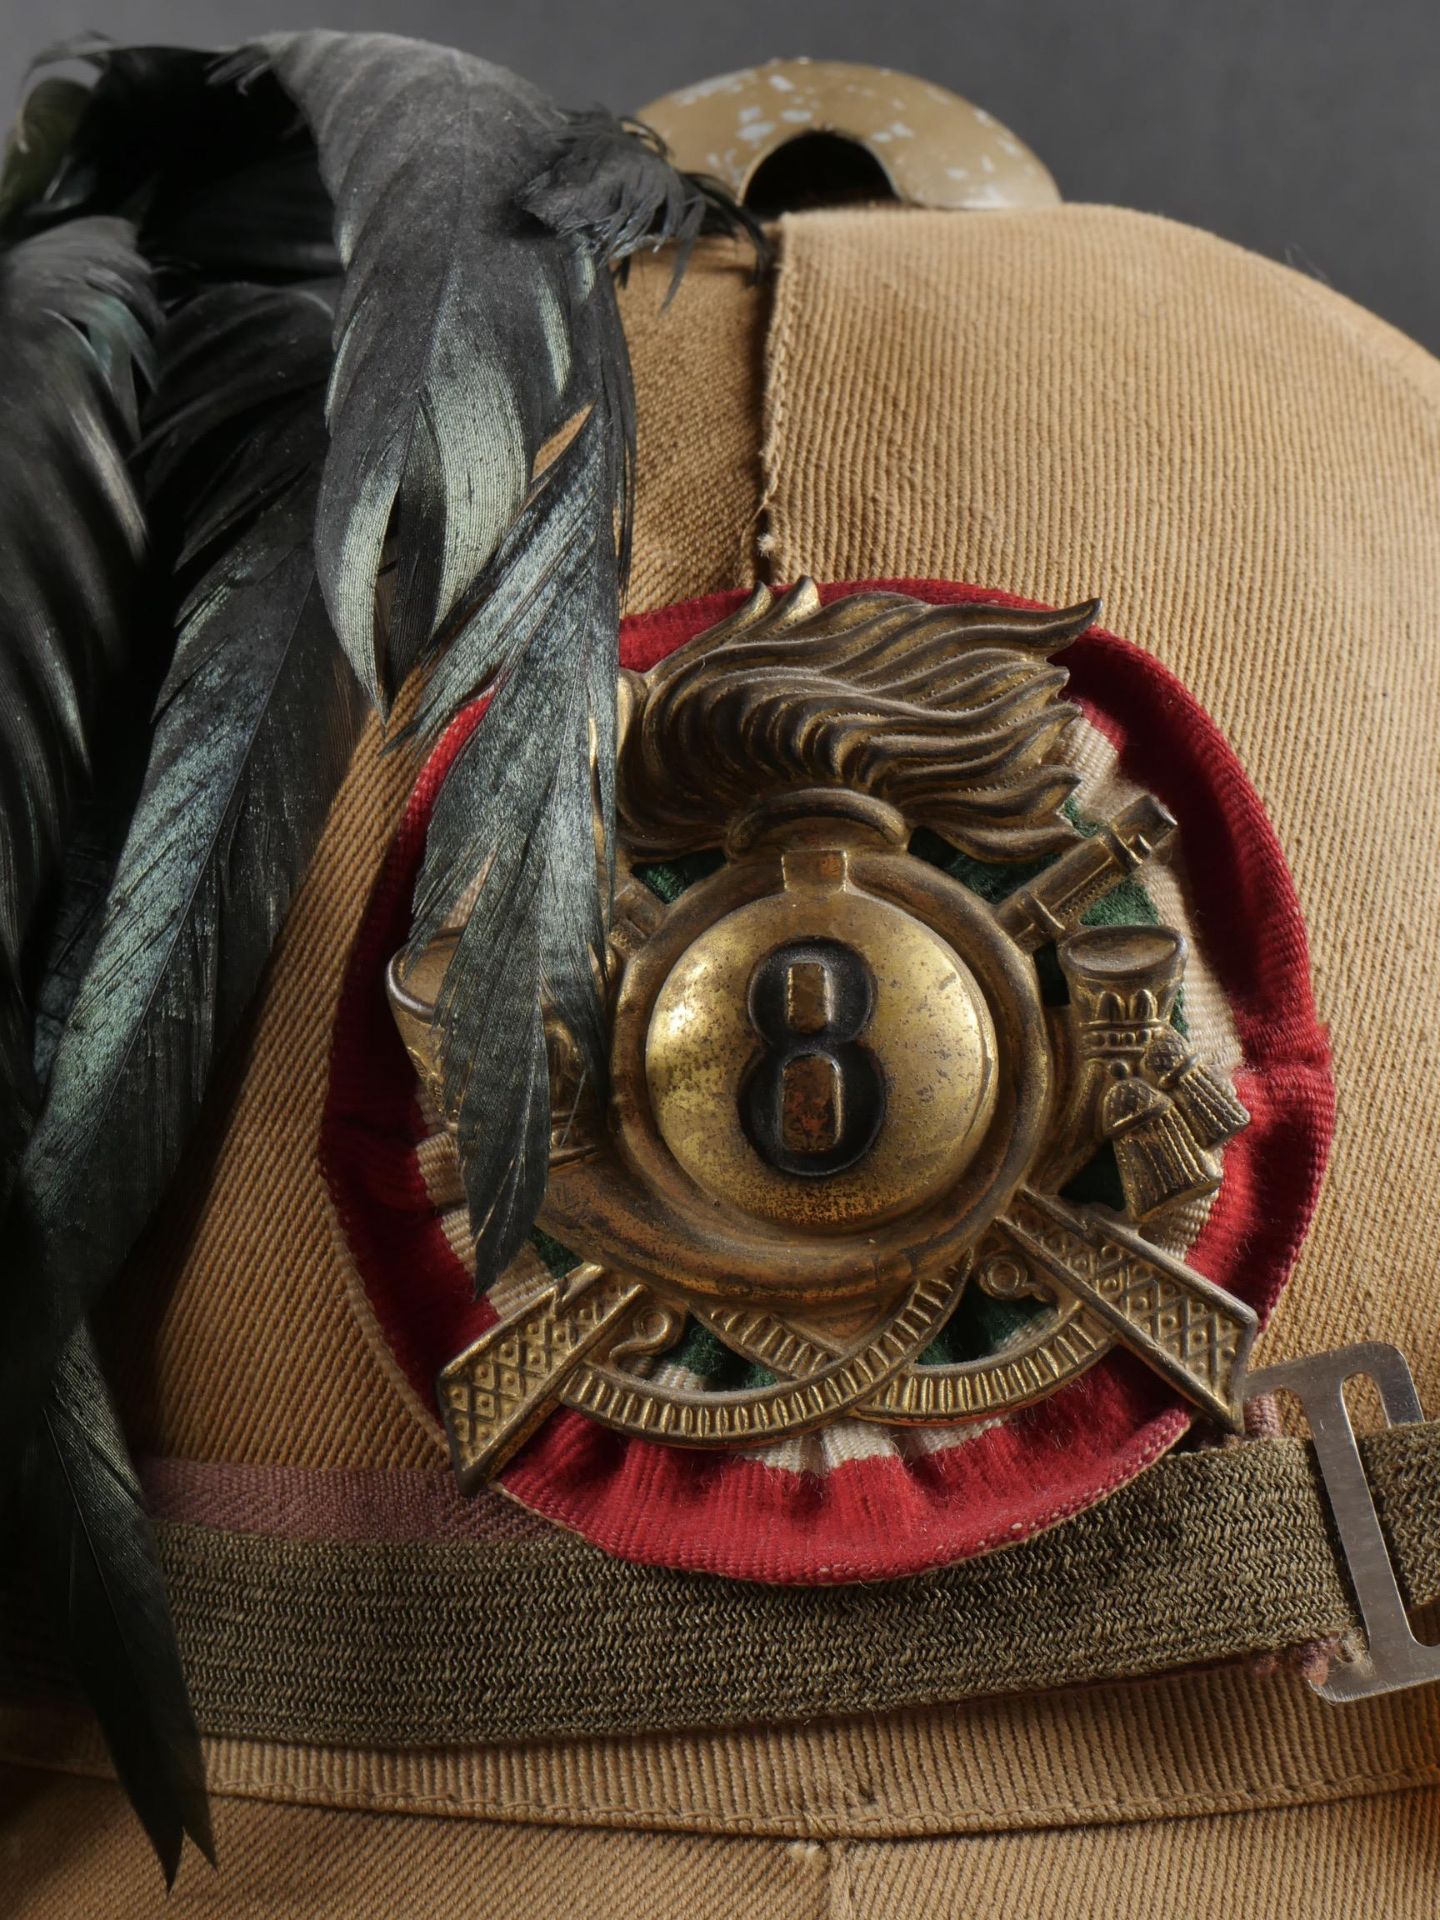 Casque tropicale du 8eme Regiment Bersaglieri. Tropical helmet of the 8th Bersaglieri Regiment. - Image 2 of 19